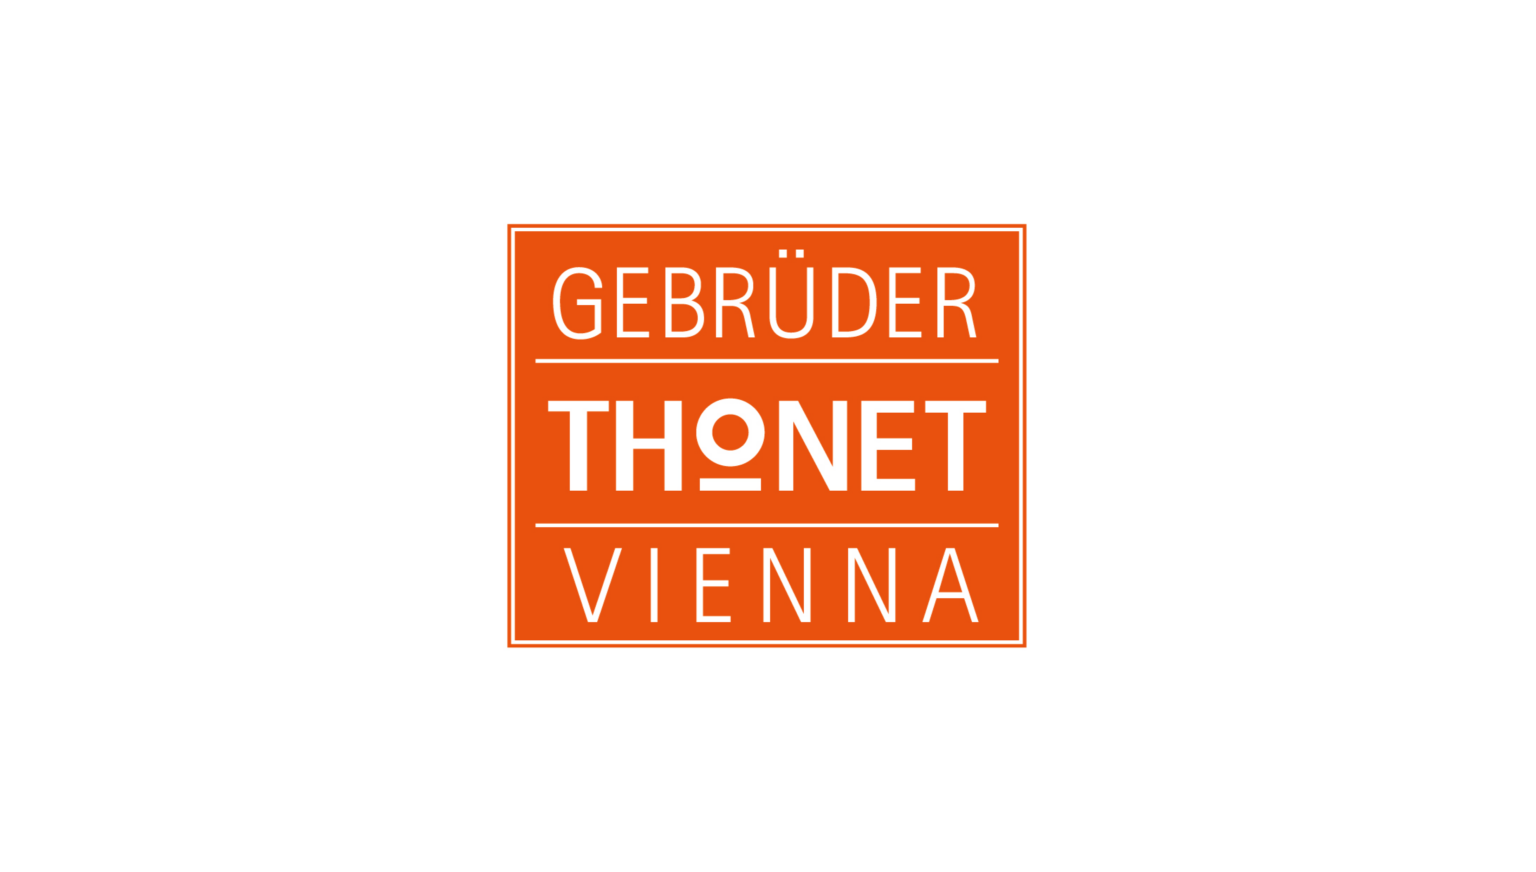 Gebruder Thonet Vienna Logo